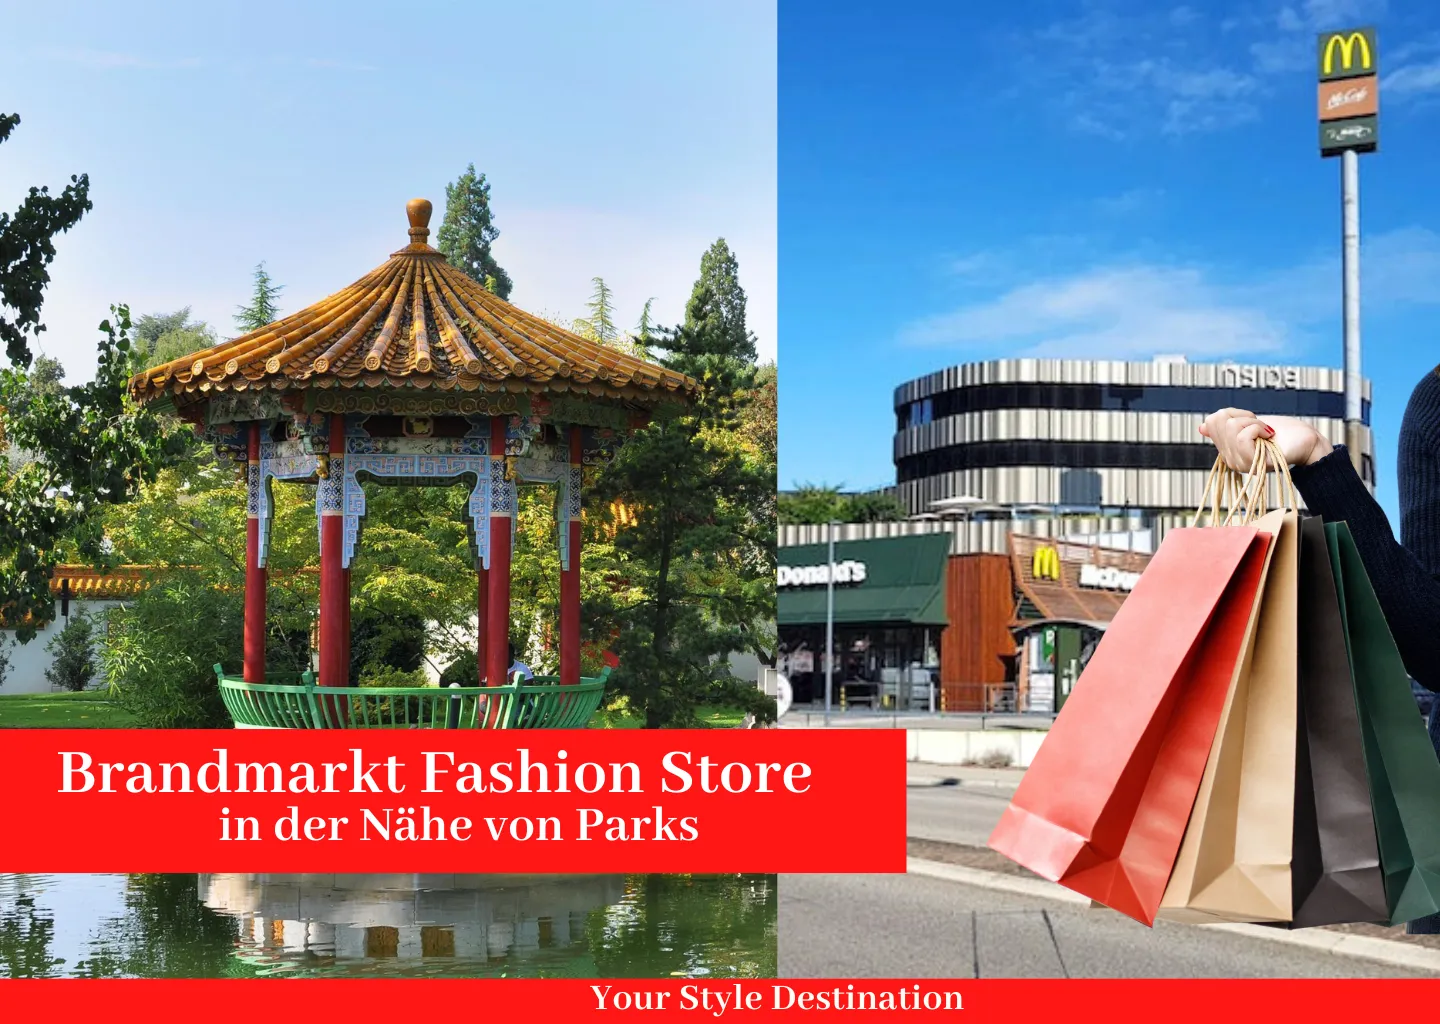 Brandmarkt Fashion Store in der Nähe von Parks – Your Style Destination